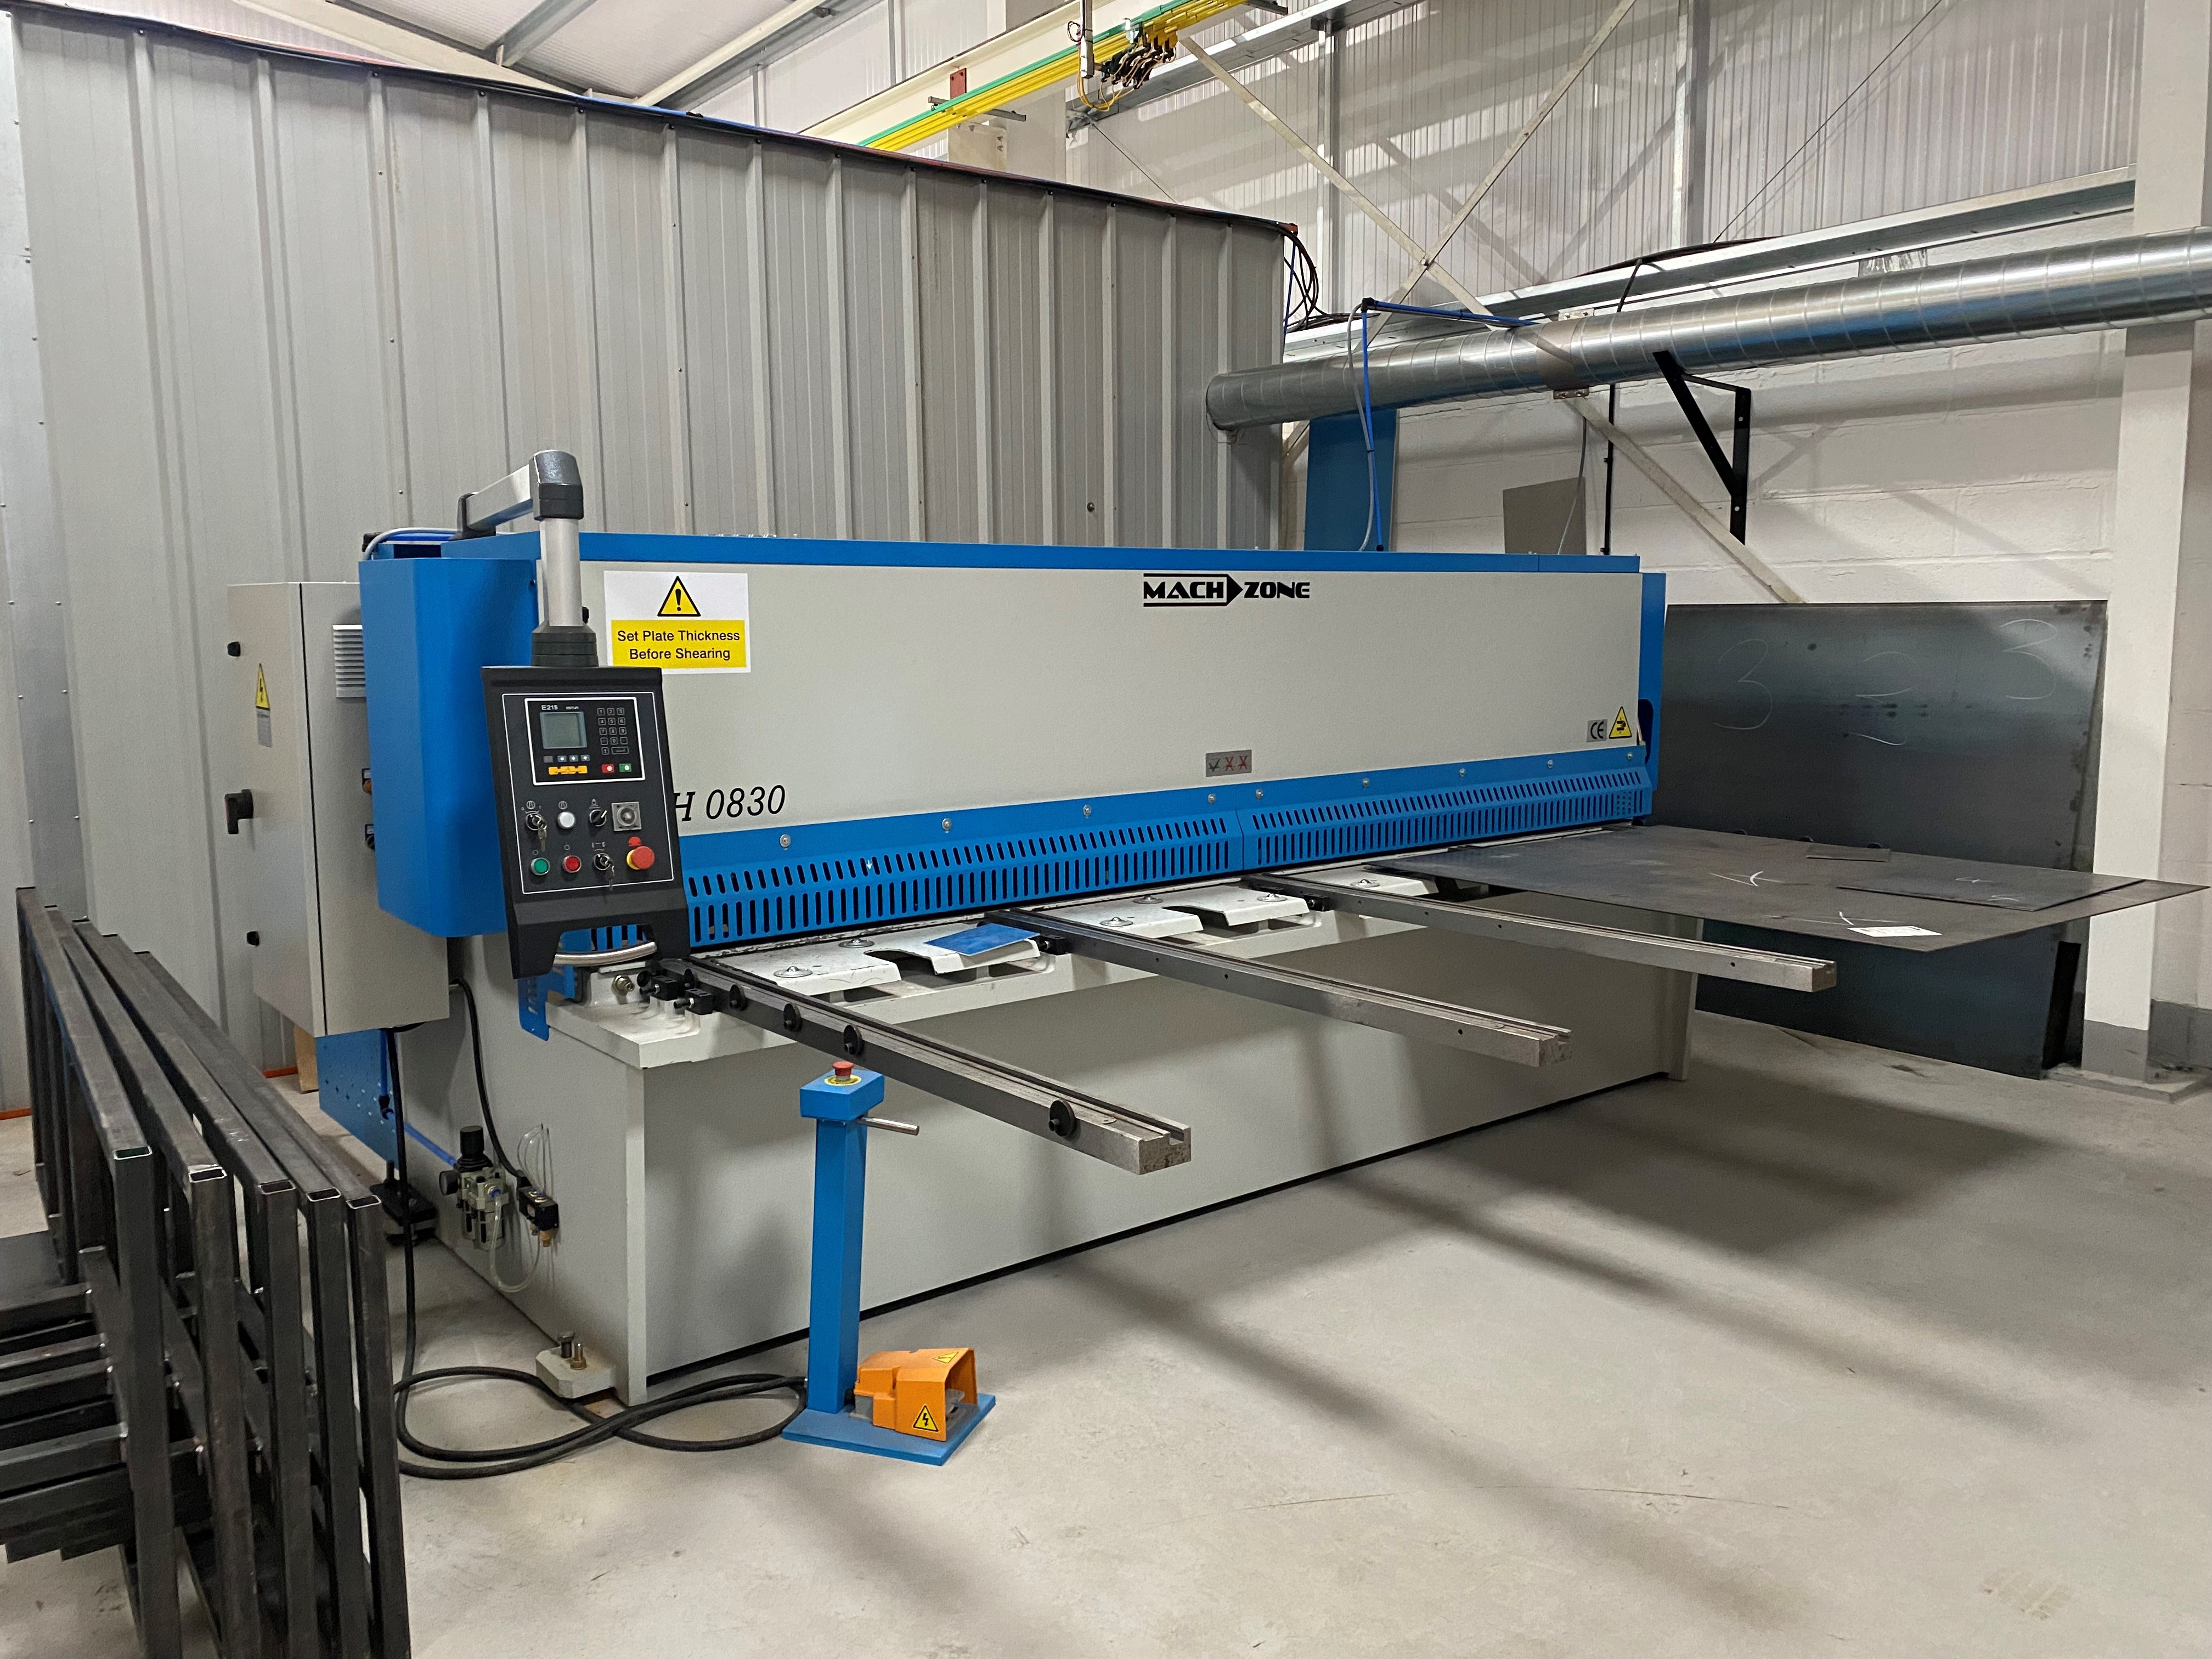 metal bending machine at the PCM handling warehouse